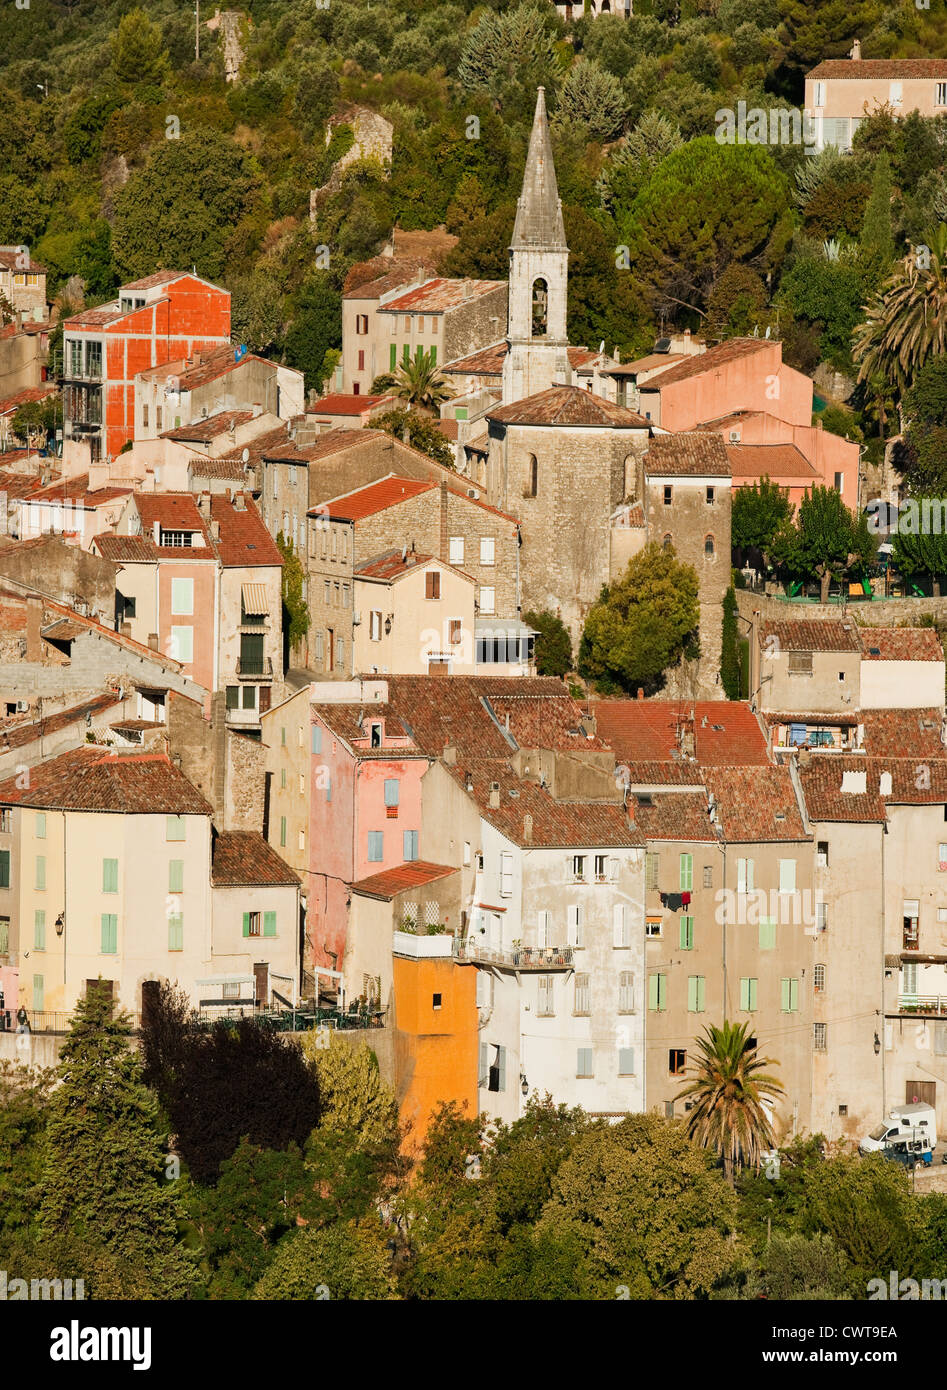 Una vista del pittoresco villaggio francese di Callas un comune nel dipartimento del Var nella regione Provenza Alpi Costa Azzurra in Francia Foto Stock